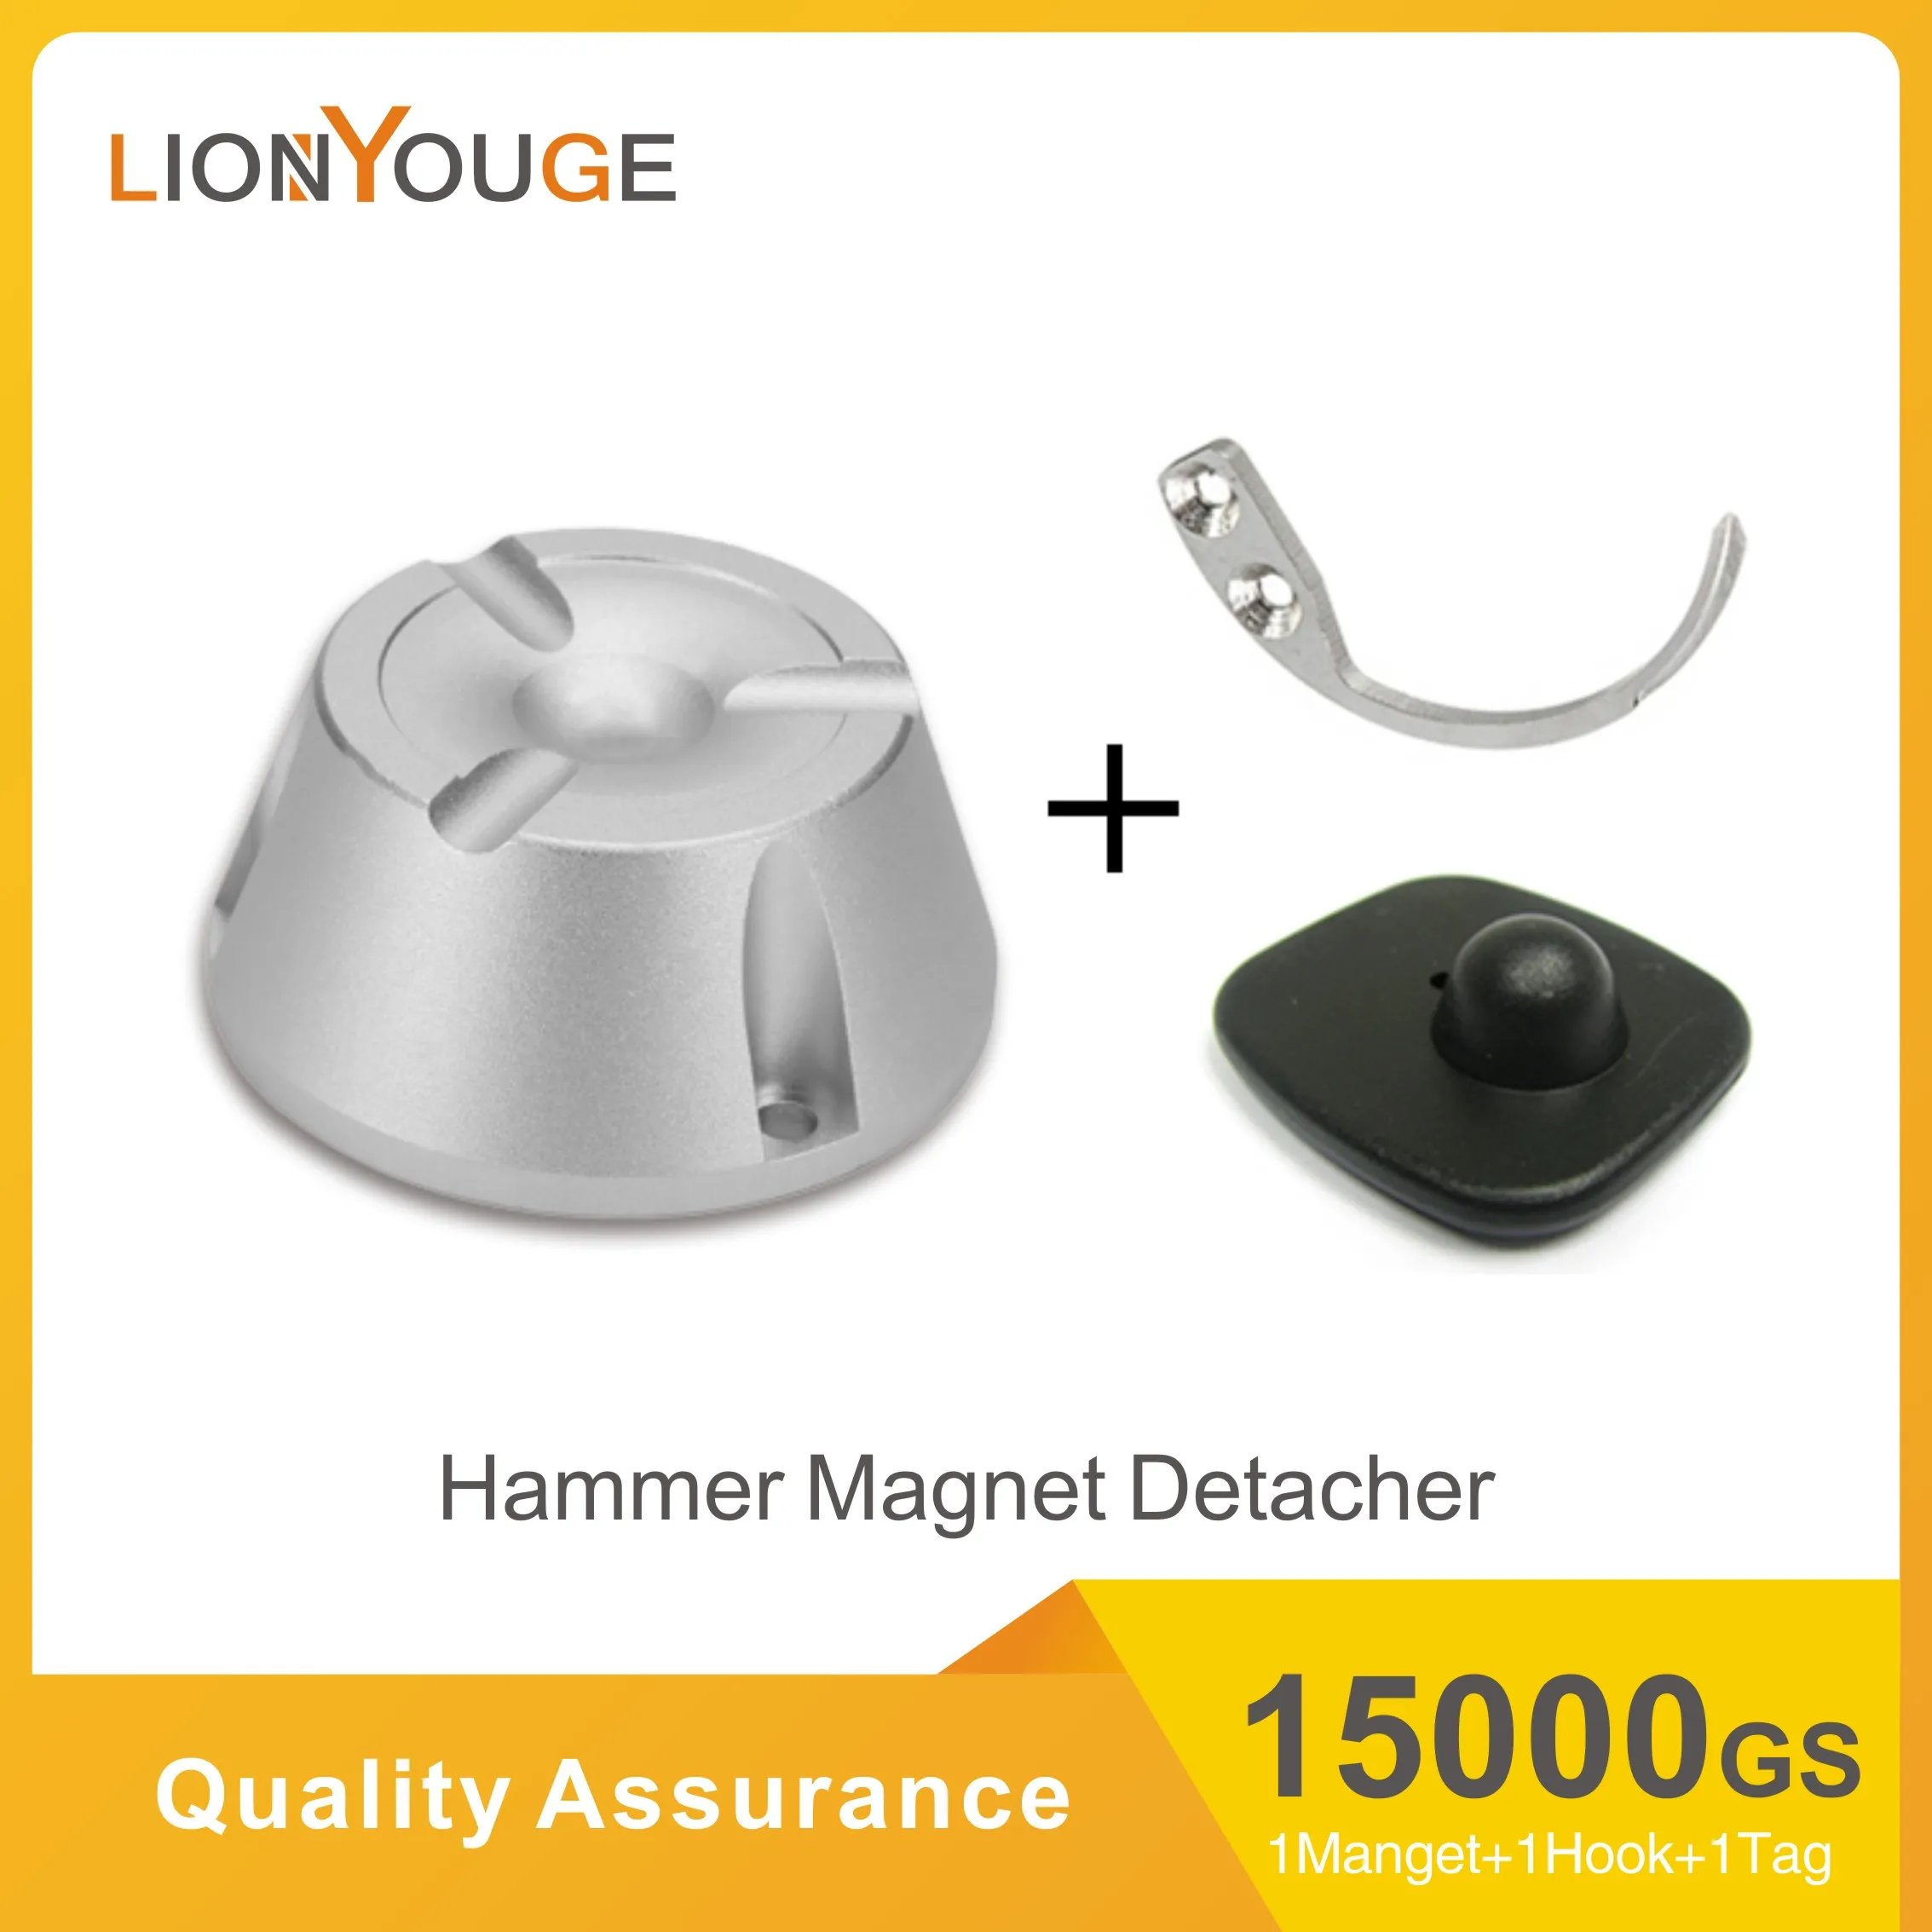 

Eas detacher hard tag magnetic remover Force Golf Detacher Surface 15,000GS